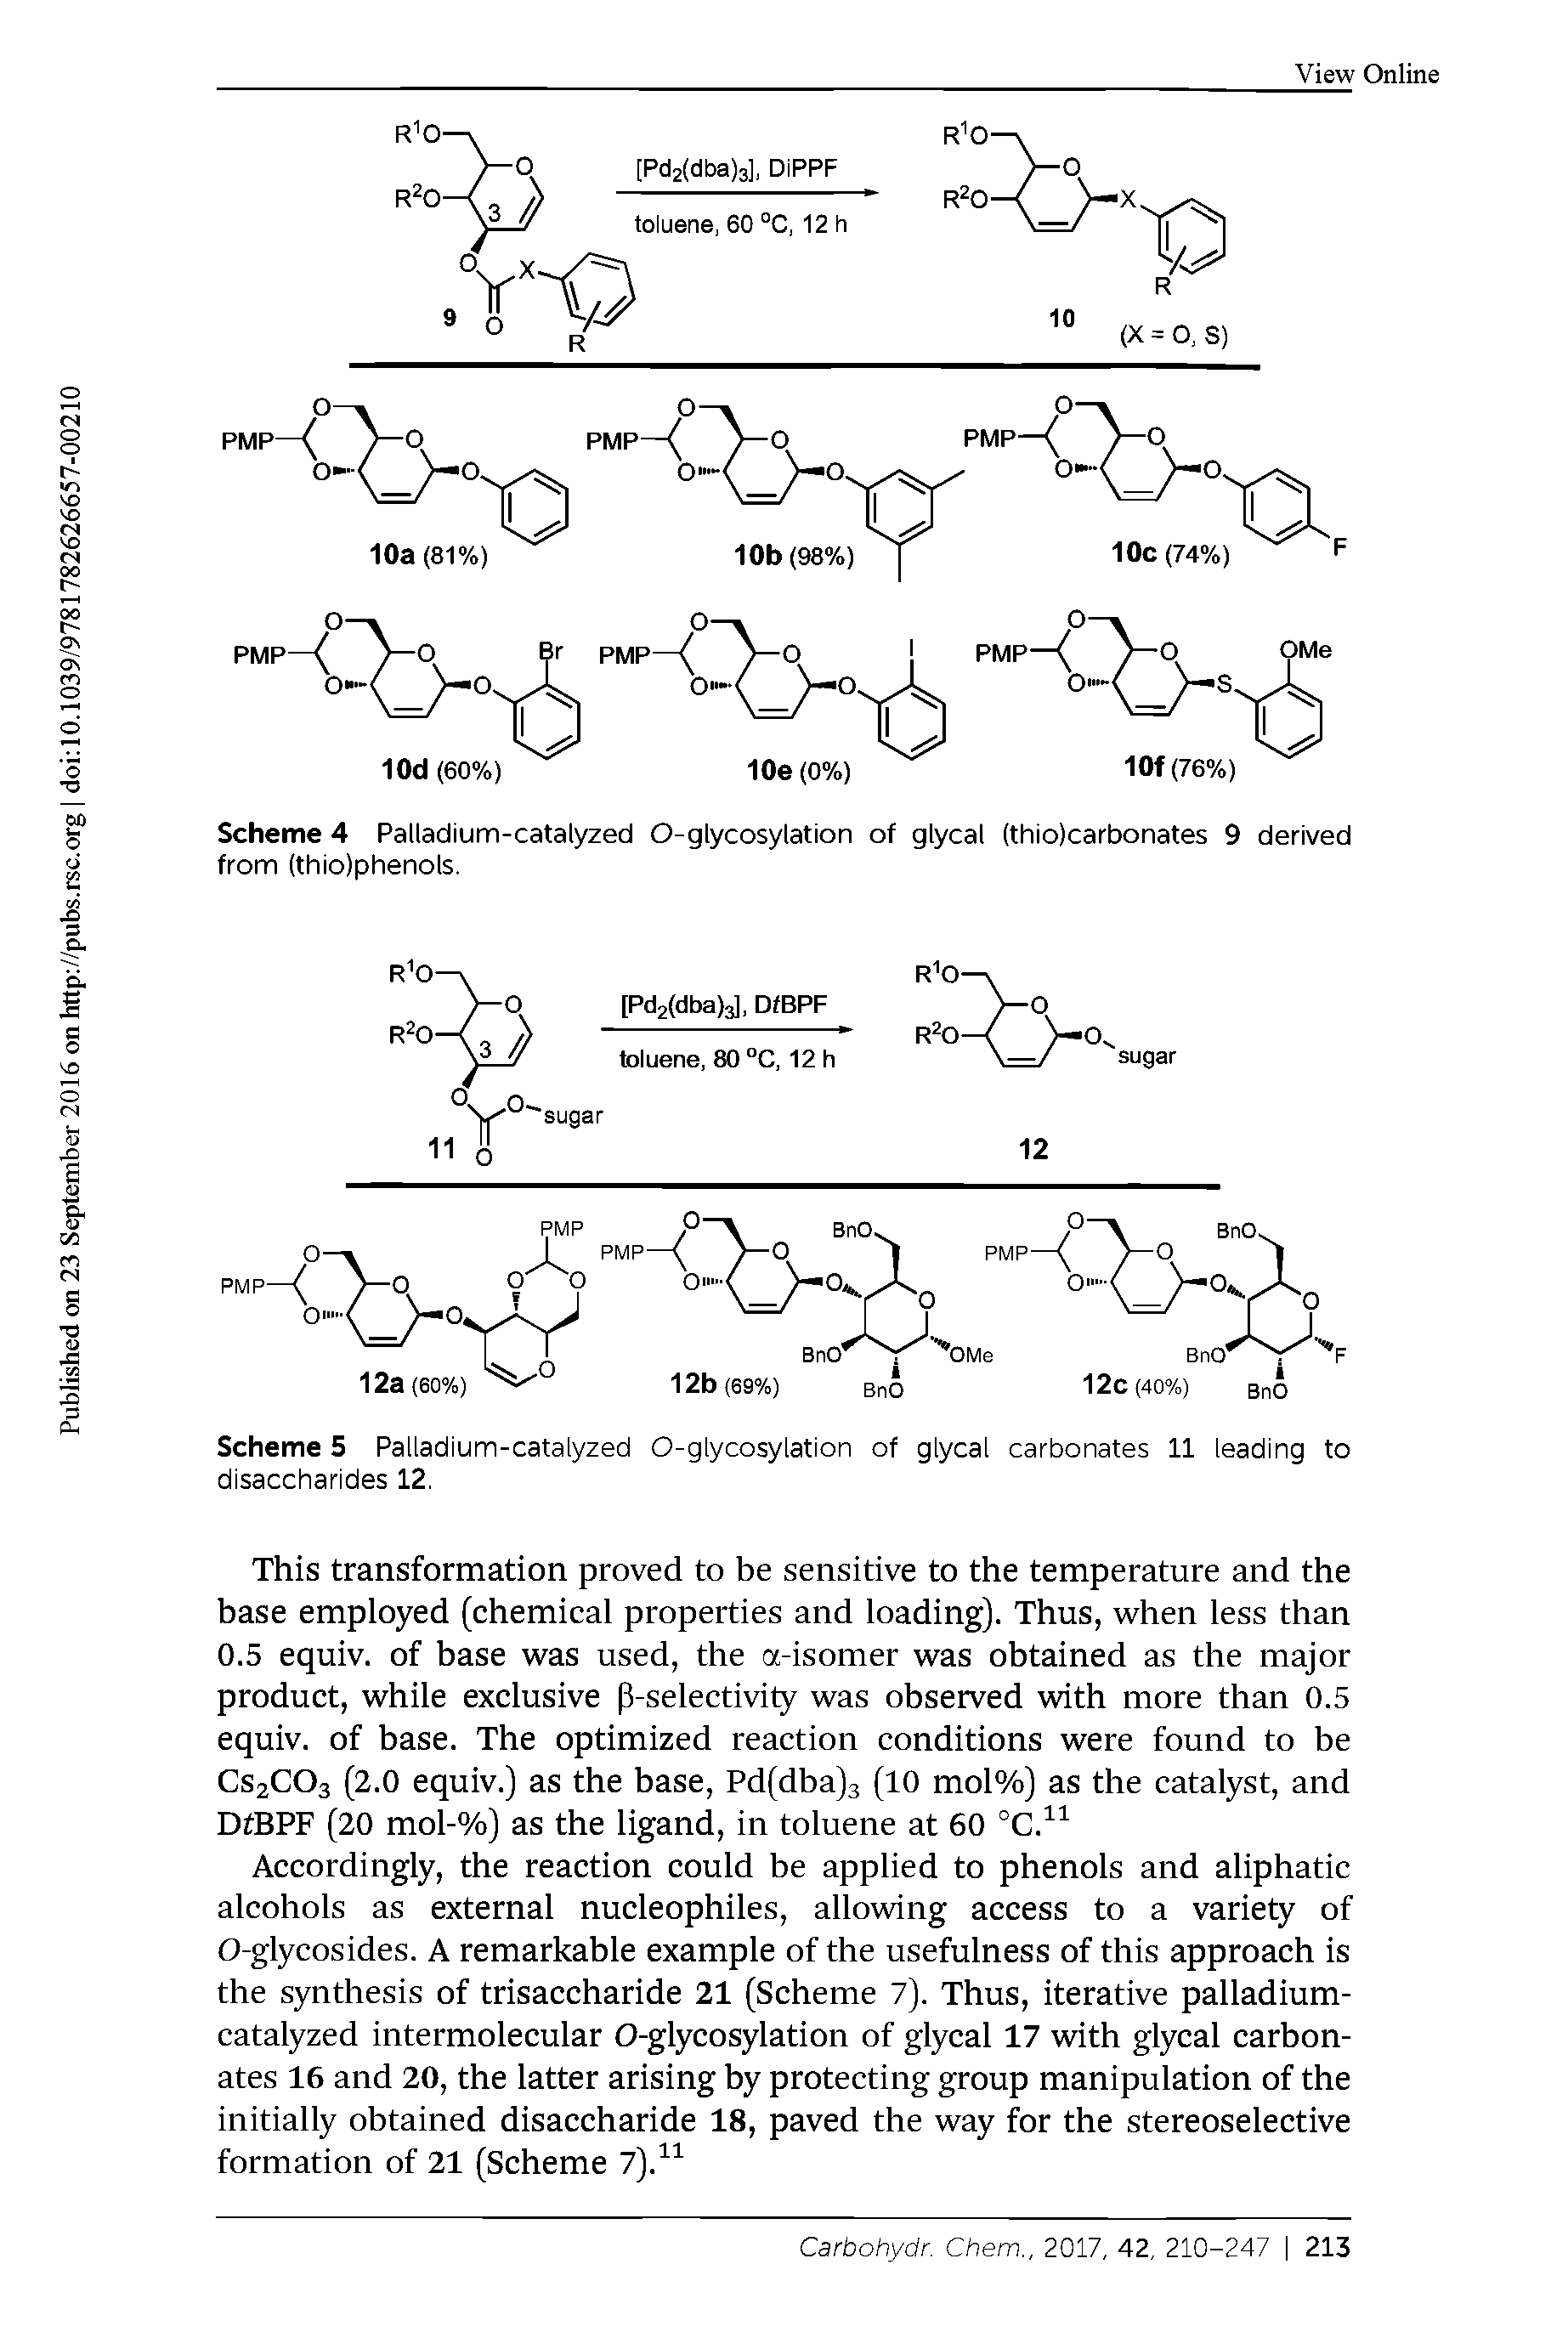 Scheme 5 Palladium-catalyzed O-glycosylation of glycal carbonates 11 leading to disaccharides 12.